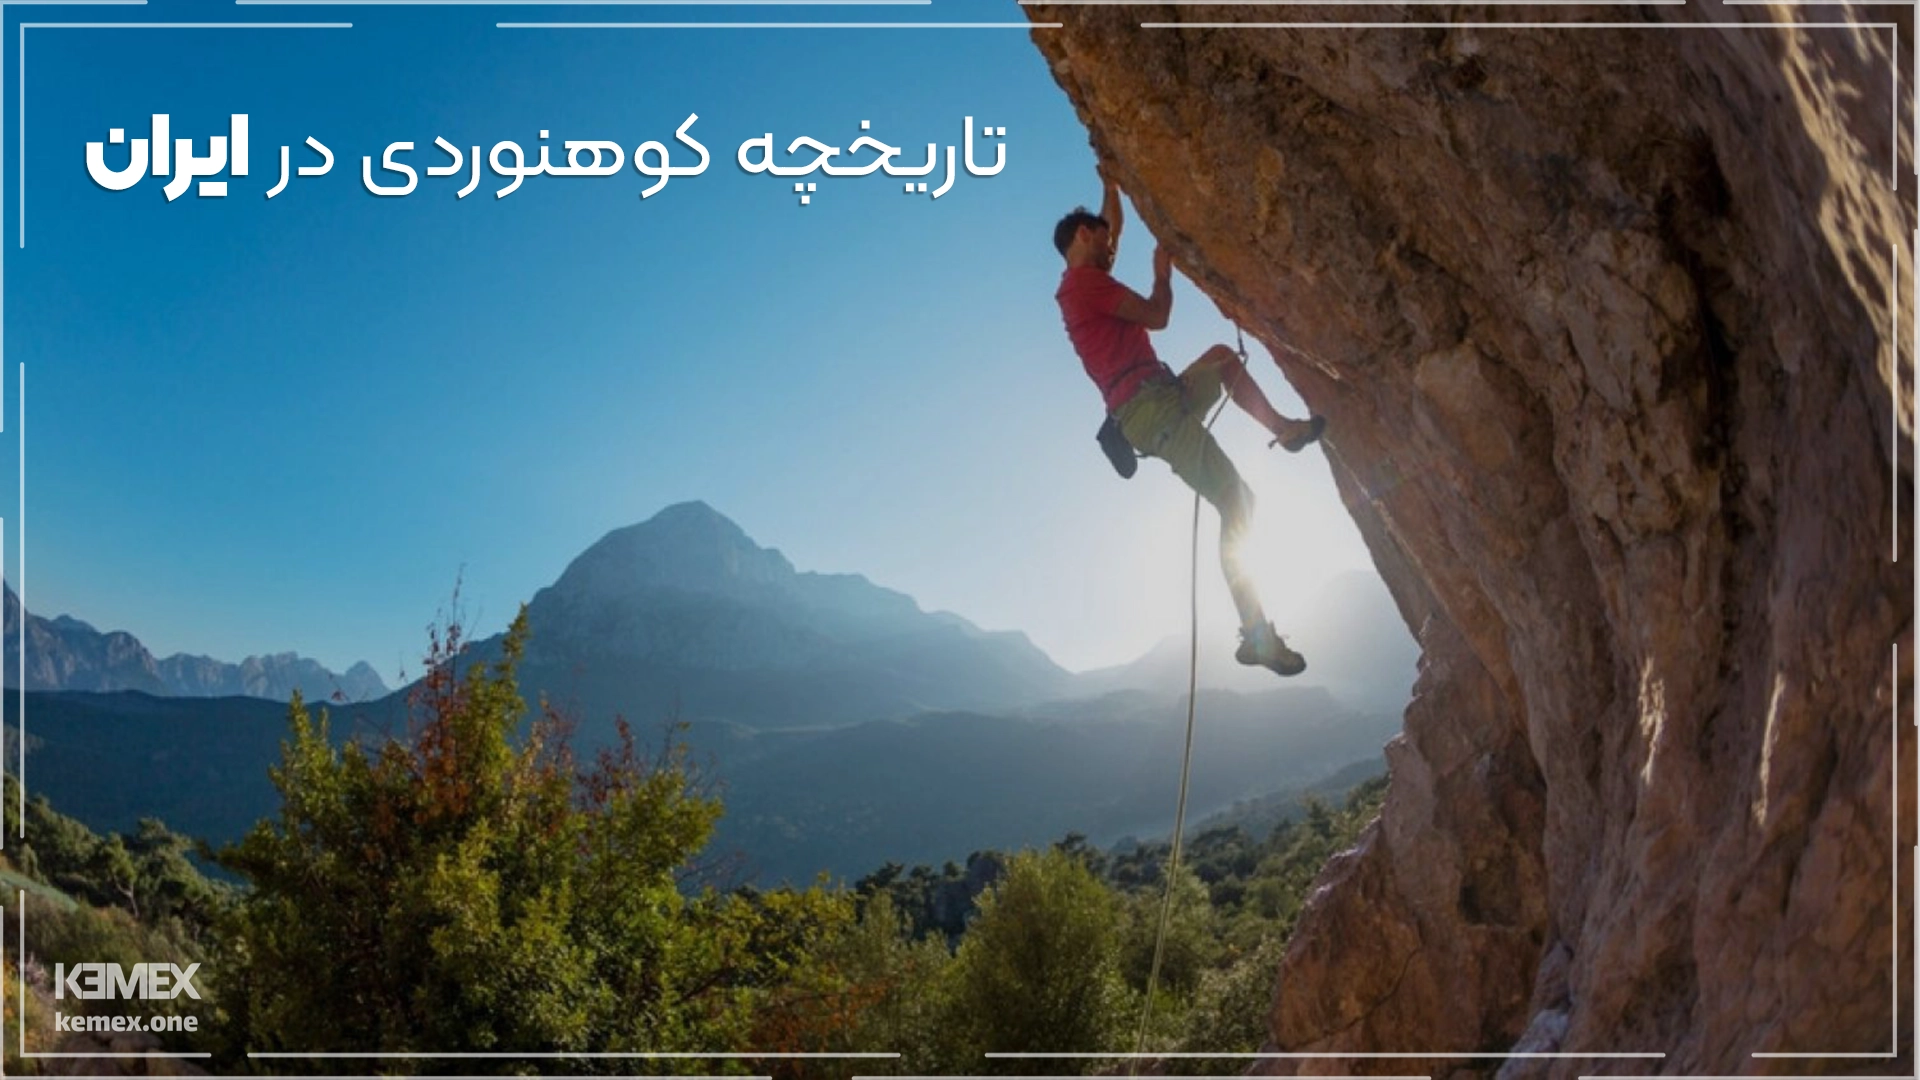 تاریخچه کوهنوردی در ایران